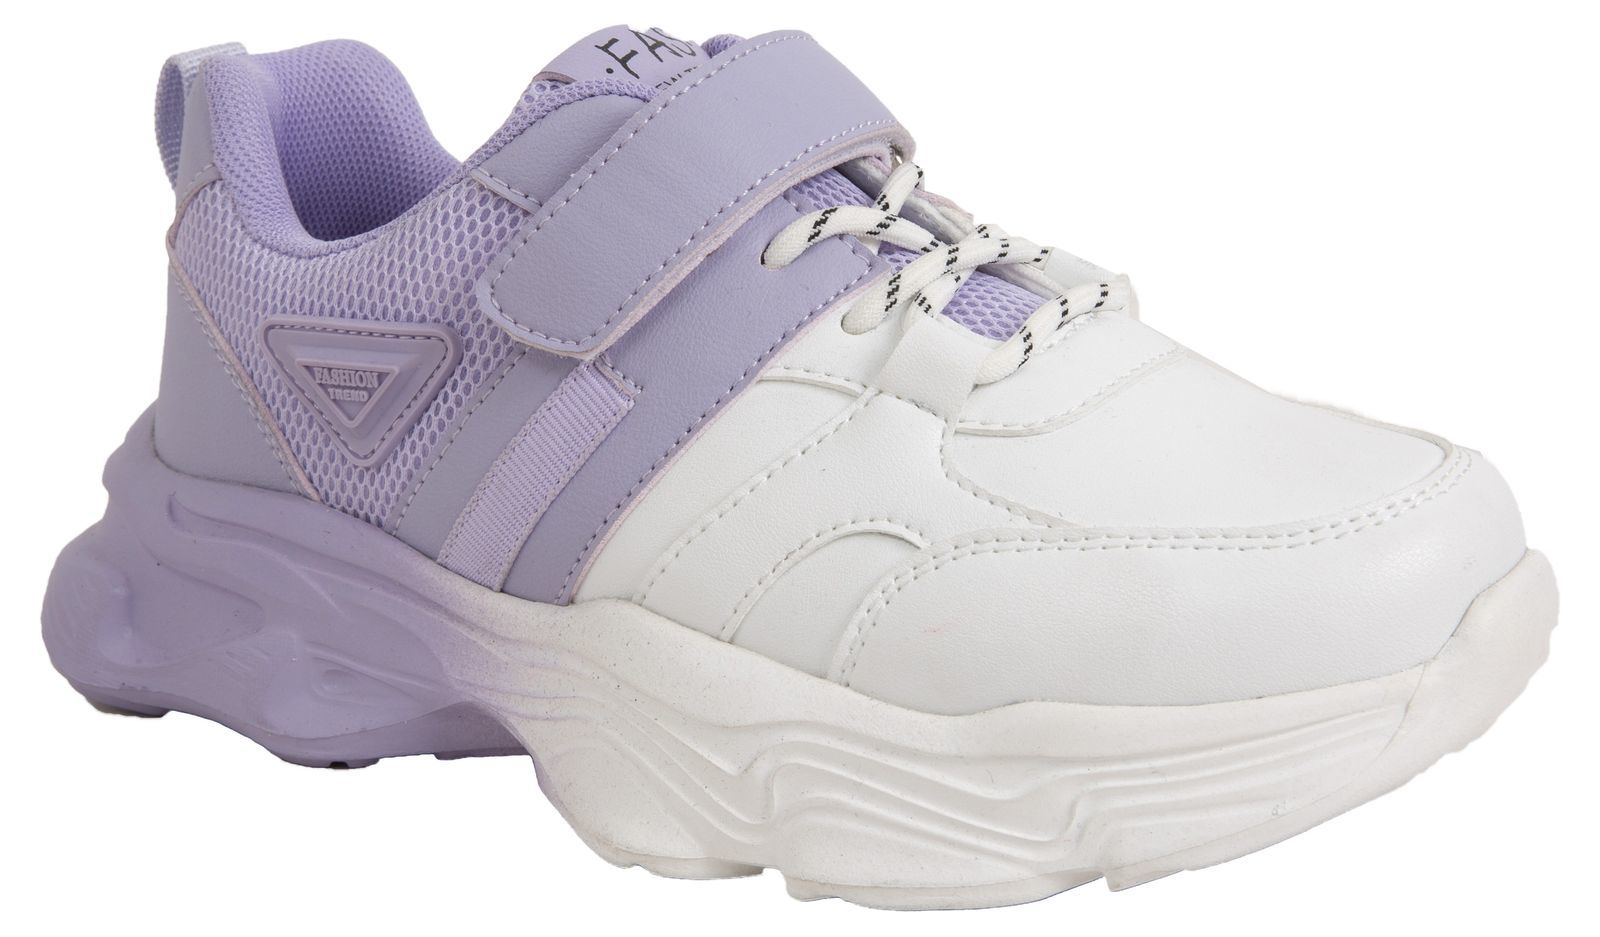 Кроссовки Tom-Miki для девочек, размер 36, T-10470-M, фиолетовые, 1 пара